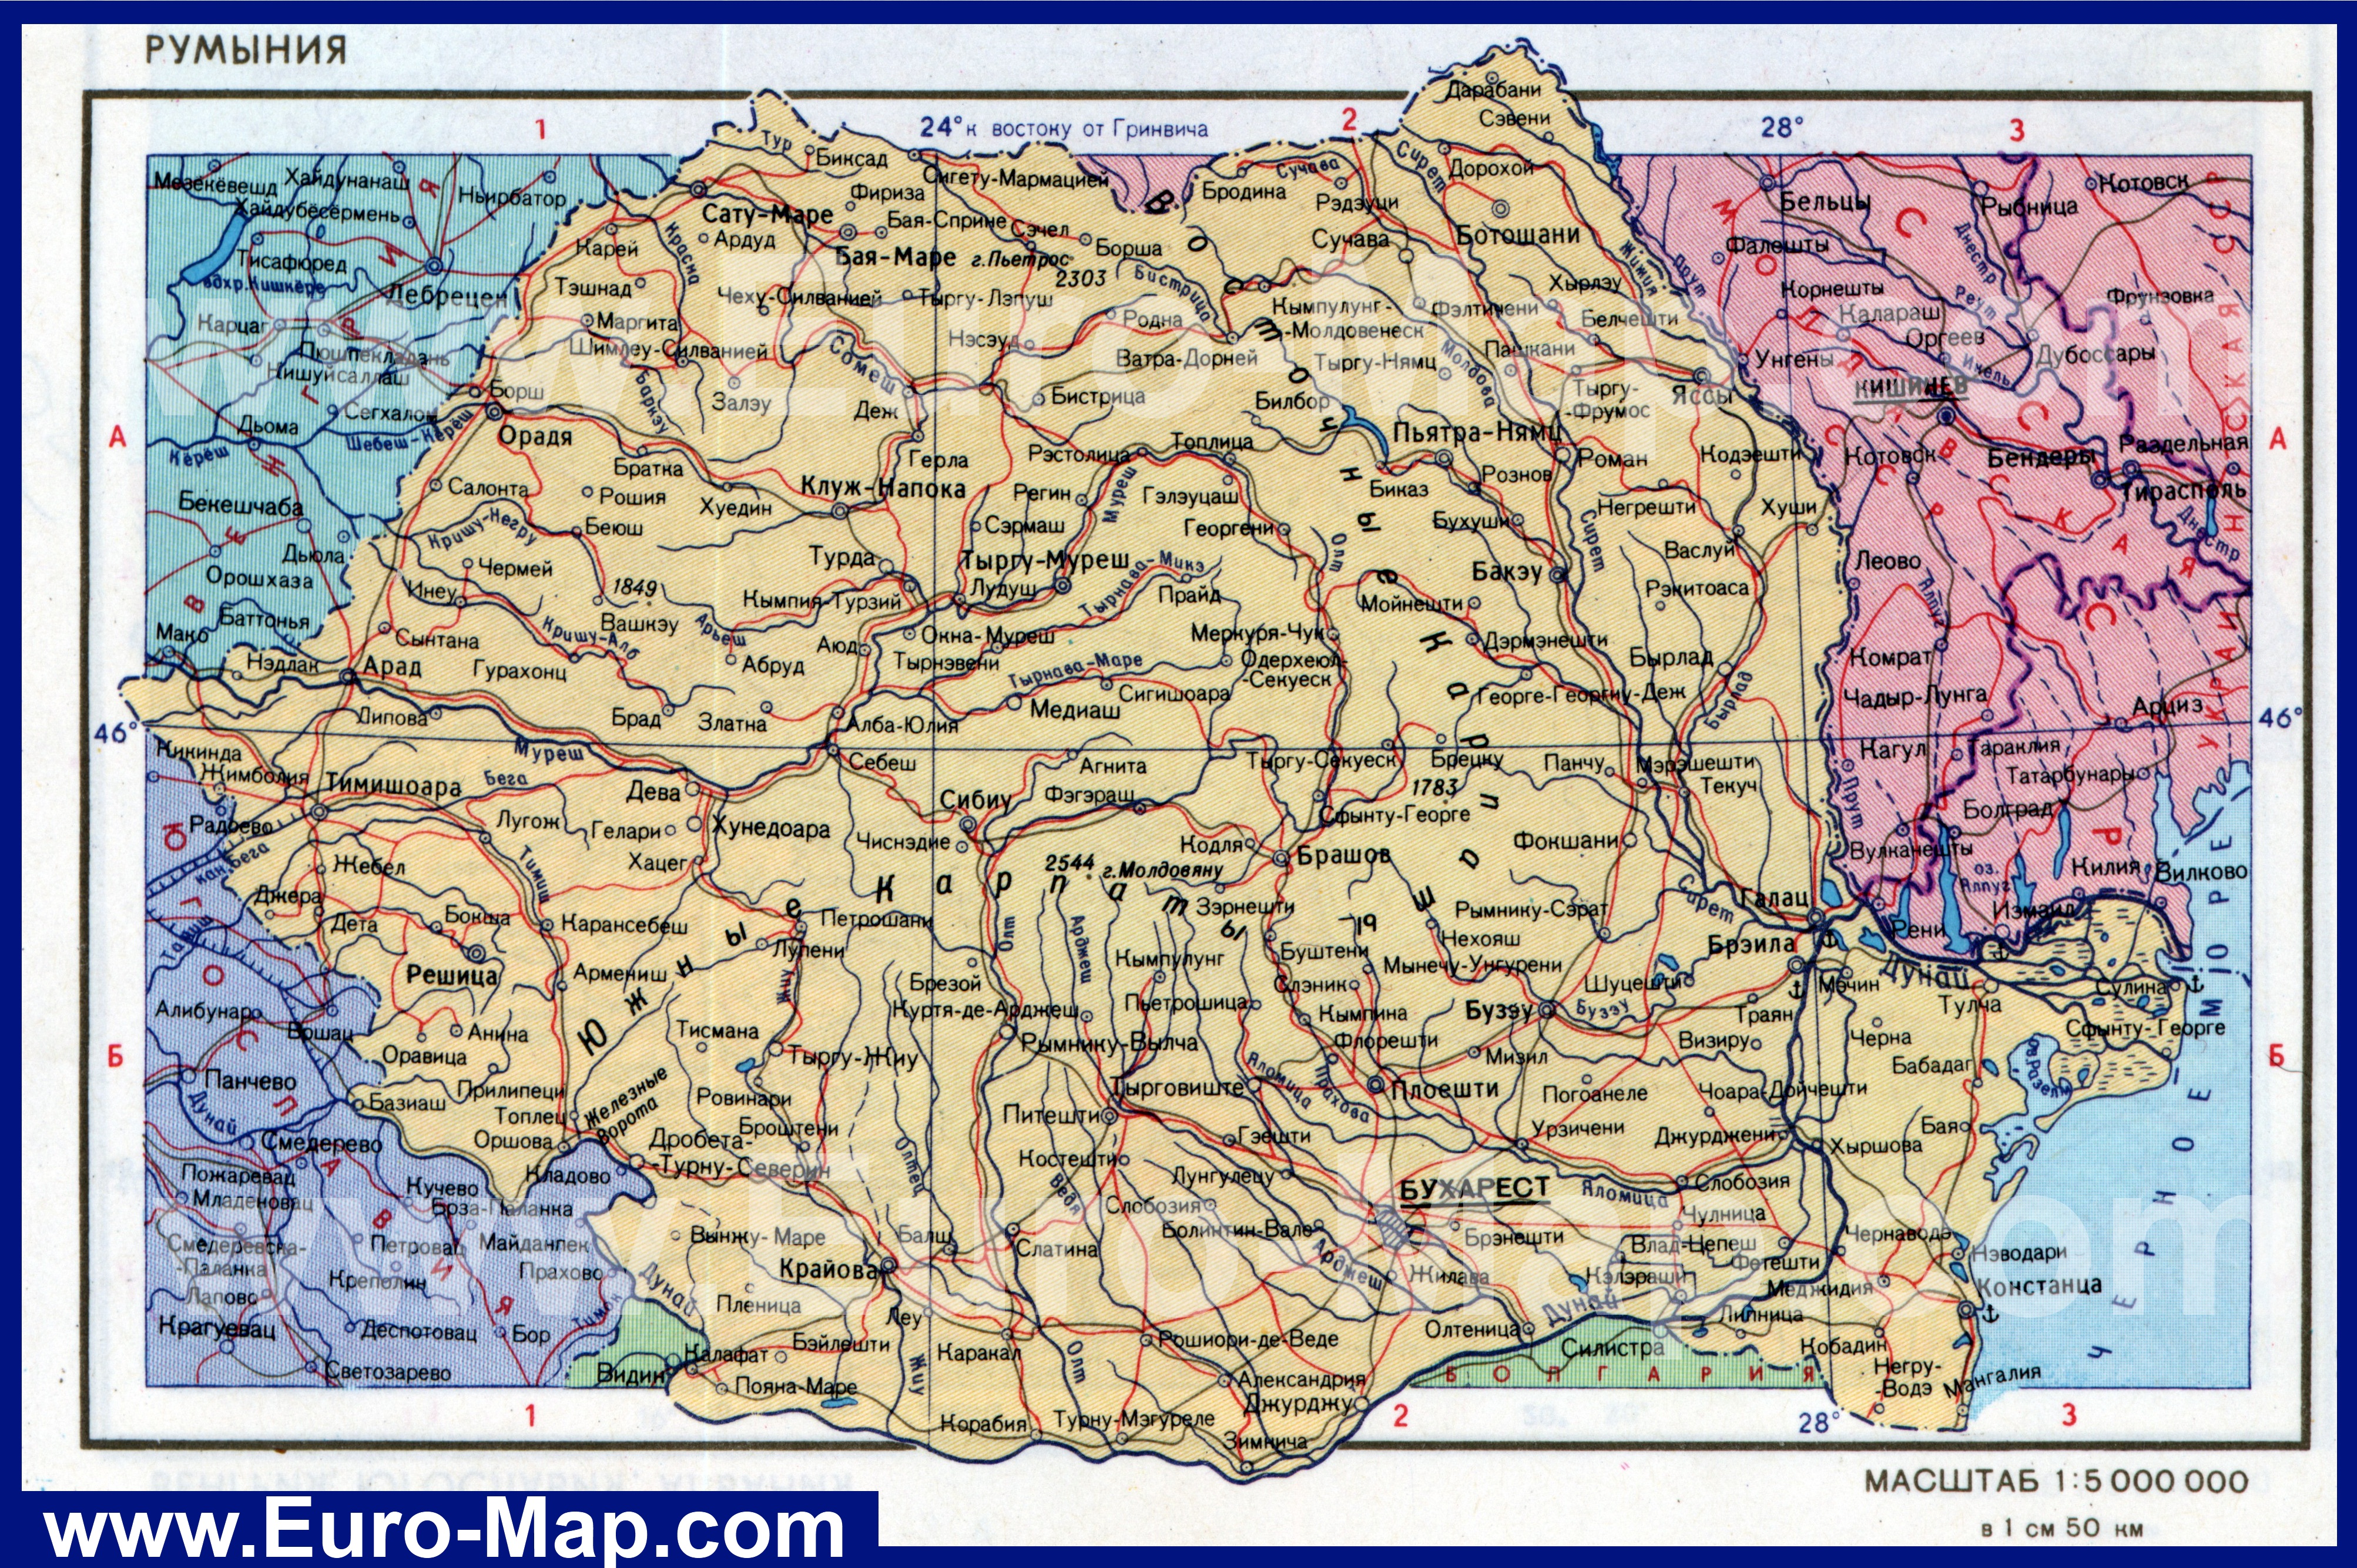 http://euro-map.com/karty-rumynii/podrobnaya-karta-rumynii-na-russkom-yazyke.jpg